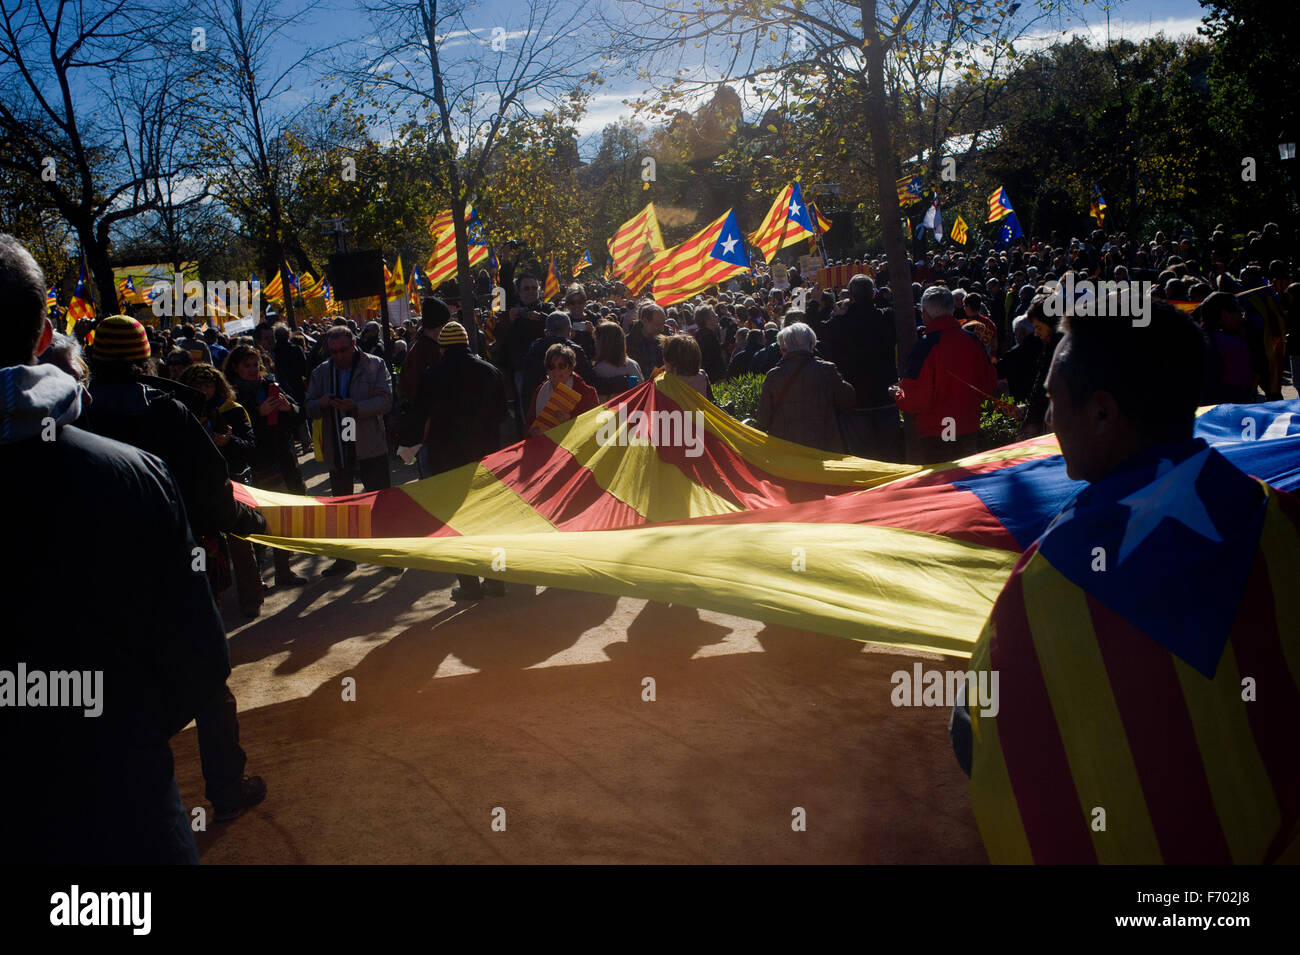 Les gens vague estelada flags (symbole de l'indépendance catalane) au Parc de la Ciutadella de Barcelone, Espagne. Banque D'Images